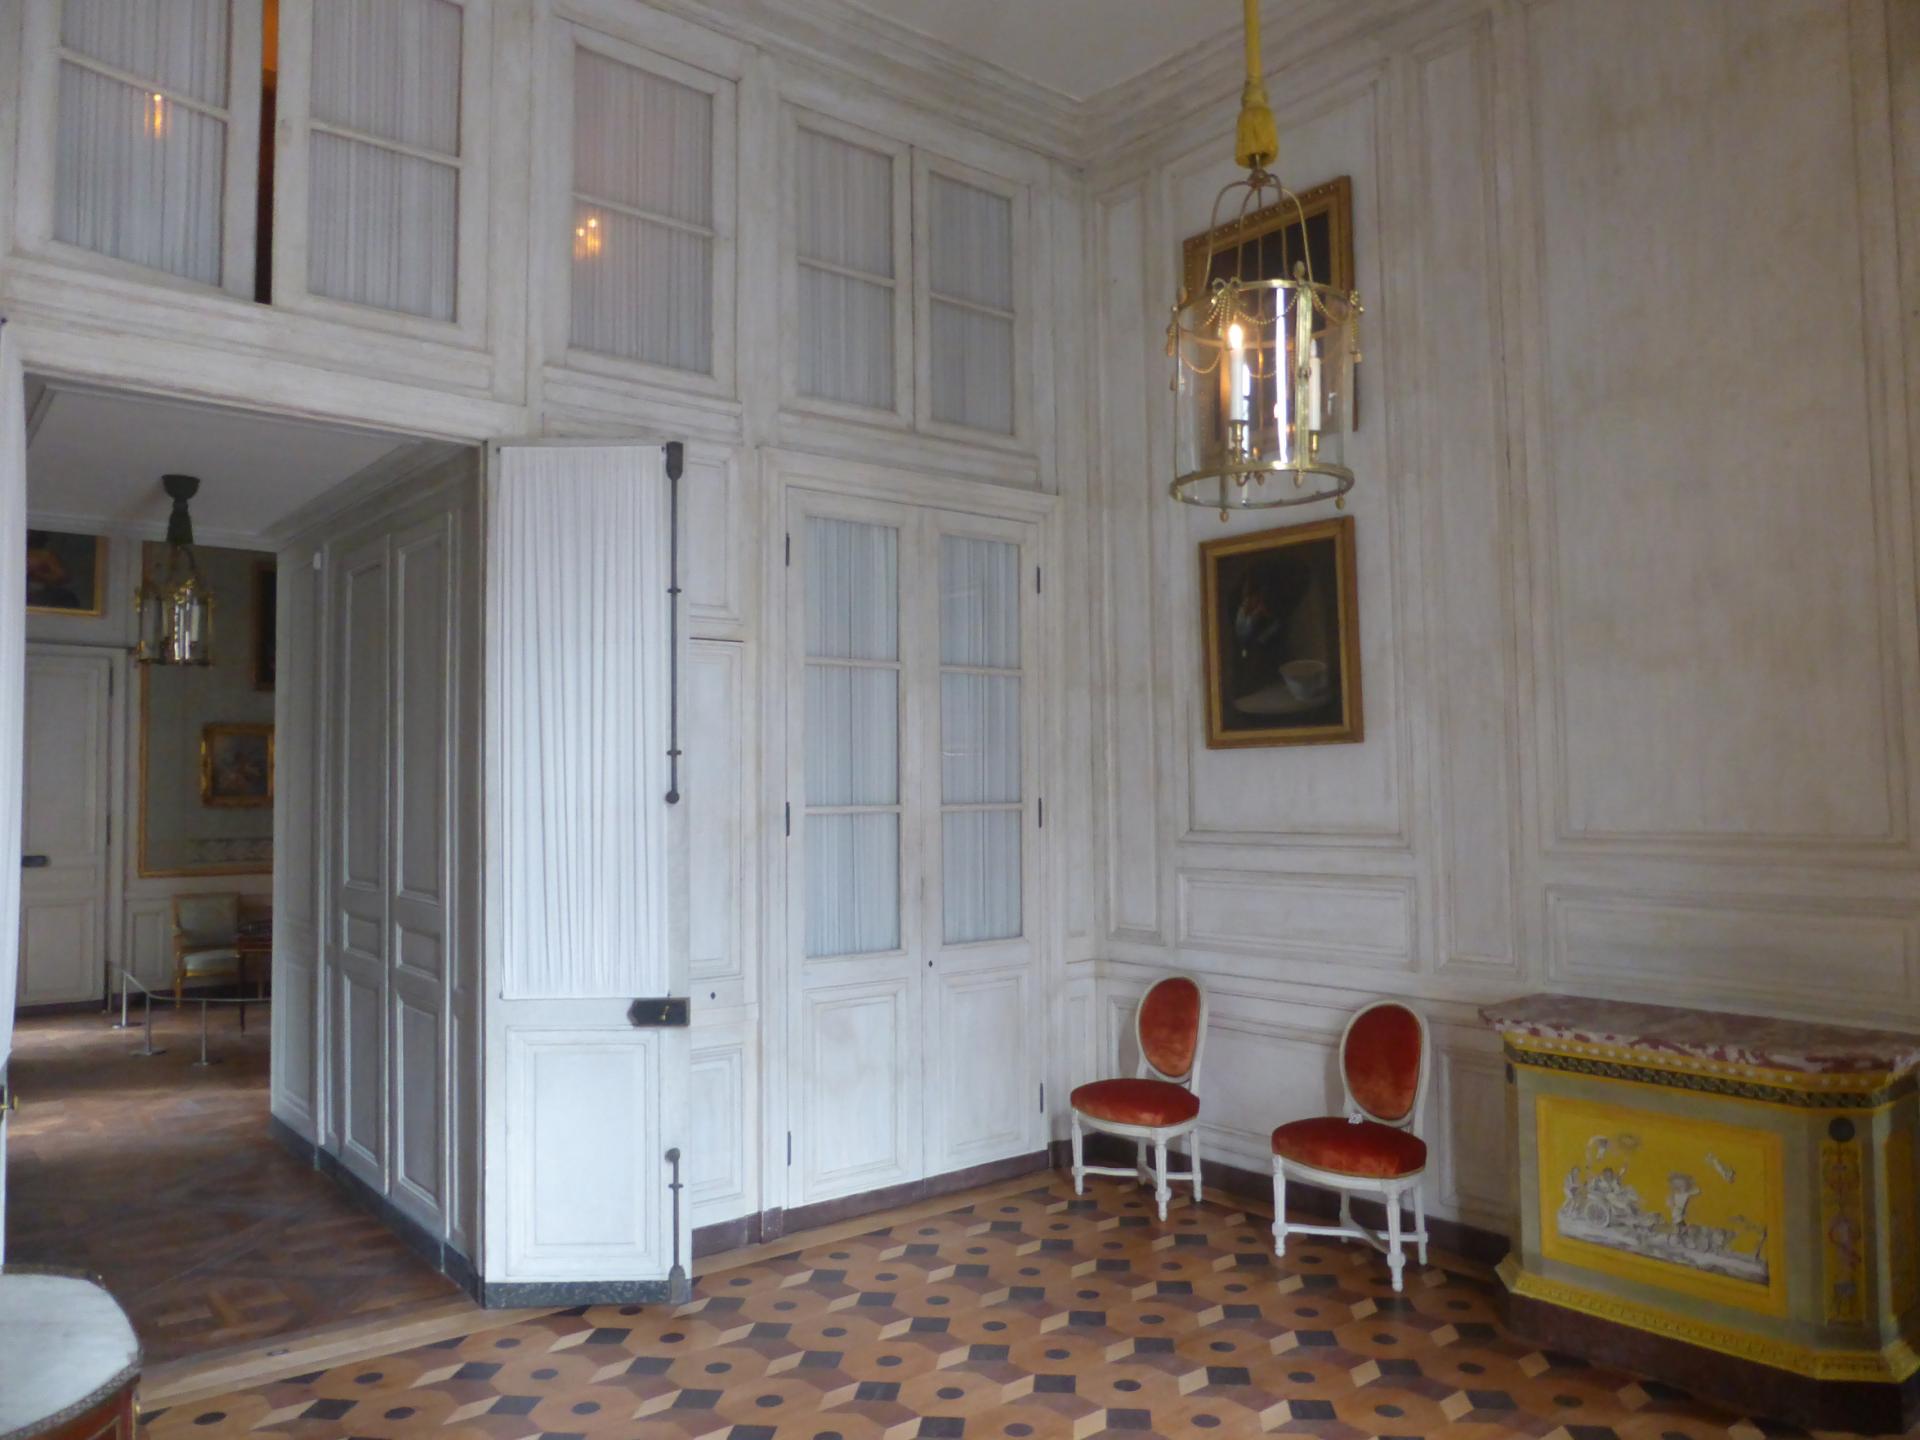 Antichambre de l'appartement de Thierry de Ville d'Avray, cl. Ph. Cachau